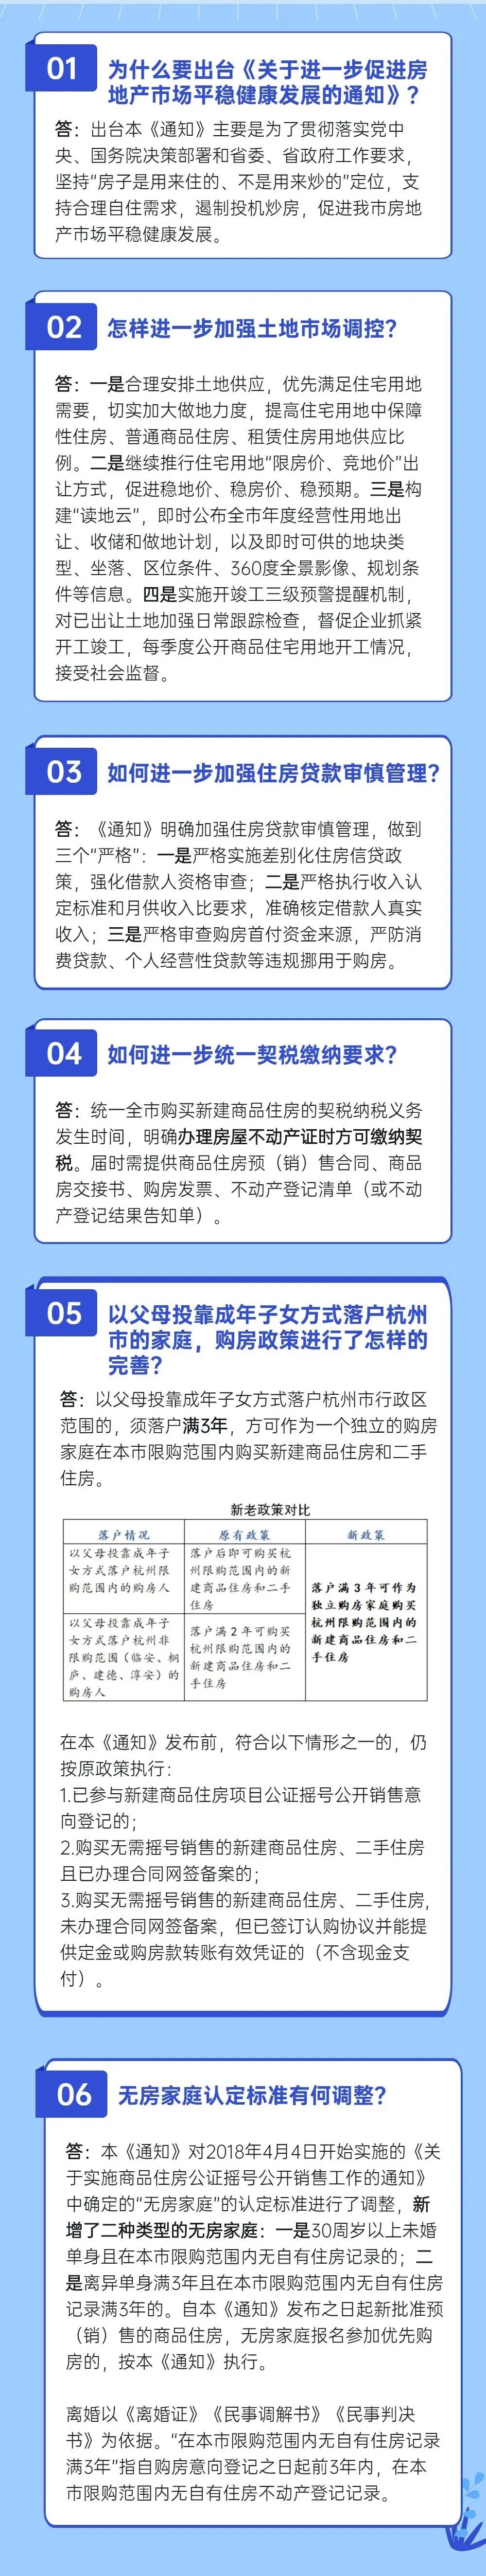 上海最新房产政策2017_最新房产契税政策2017_杭州最新房产取消政策